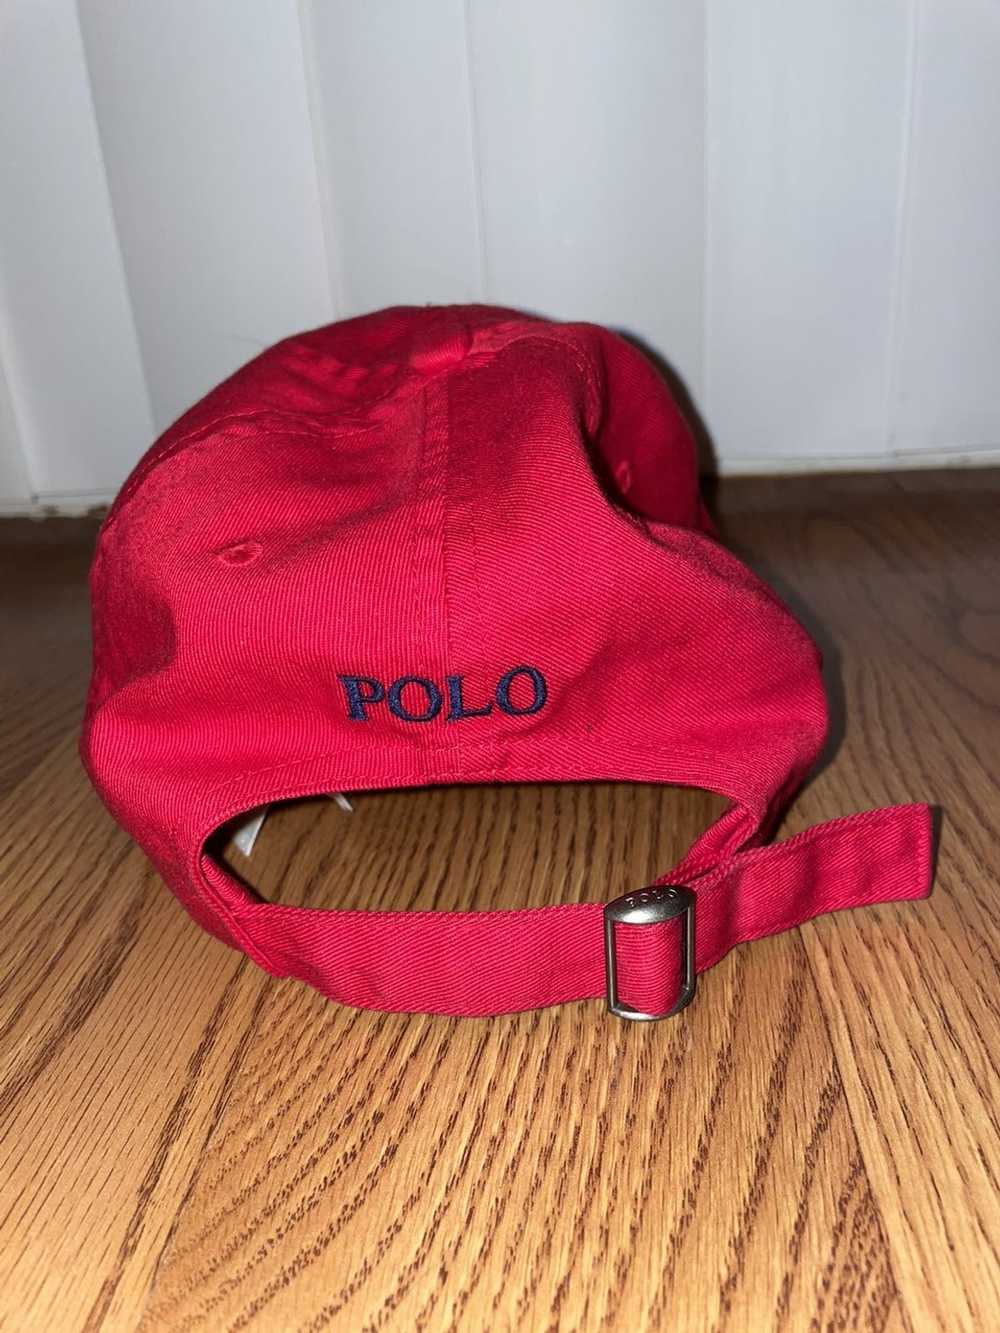 Polo Ralph Lauren Polo Ralph Lauren Hat (Red) - image 4